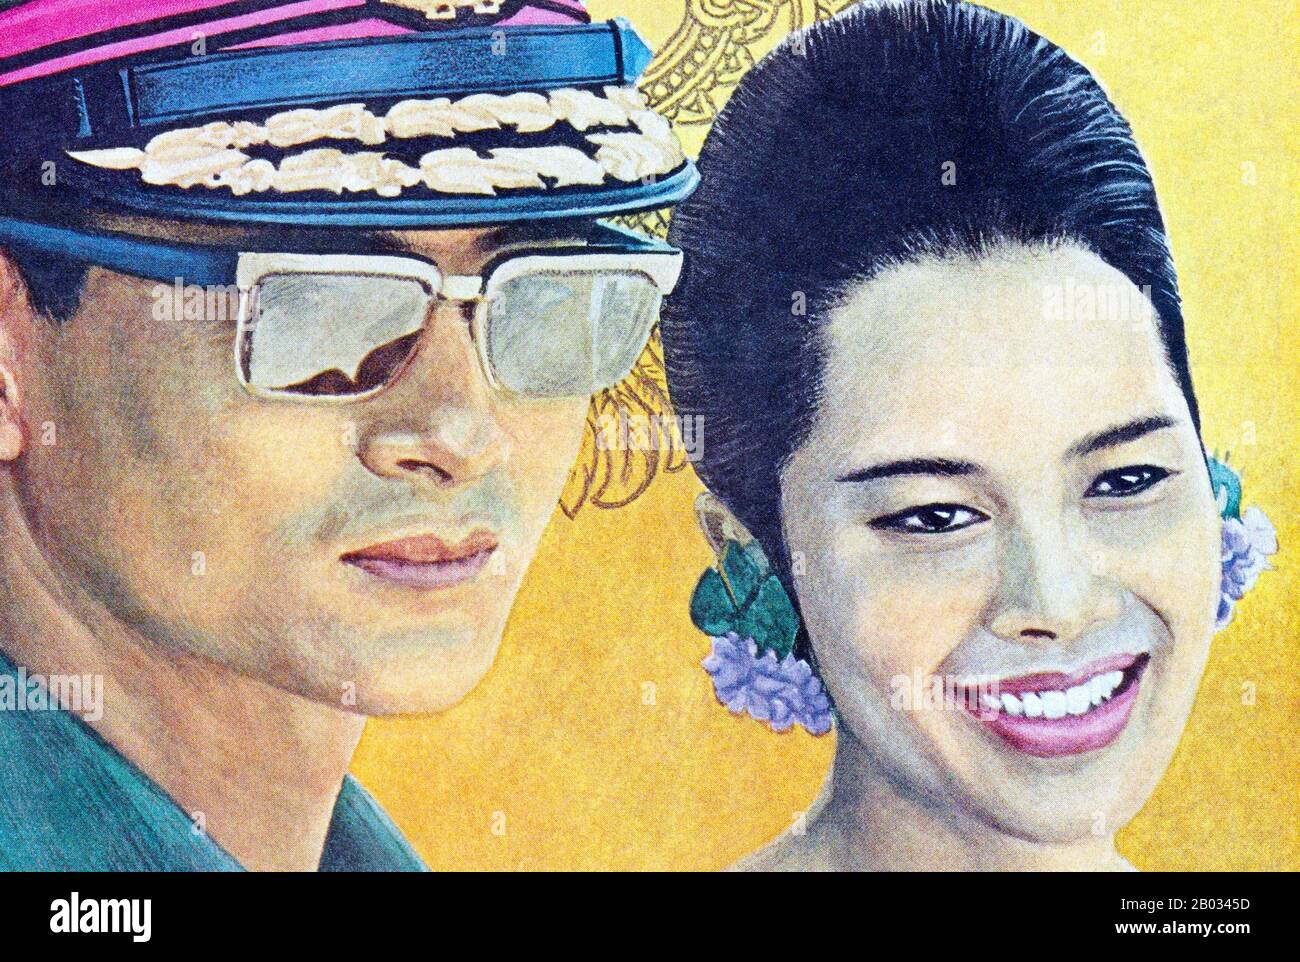 HM King Bhumibol Adulyadej (Institut Royal: Phumiphon Adunyadet, né le 5 décembre 1927) est le roi de Thaïlande actuel. Il est connu sous le nom de Rama IX Ayant régné depuis le 9 juin 1946, il est le plus long chef d'État au monde et le plus long monarque régnant de l'histoire thaïlandaise. Il est dépeint avec sa femme, HM Queen Sirikit, né maman Rajawongse Sirikit Kitiyakara le 12 août 1932. Ils ont été mariés le 28 avril 1950. Banque D'Images